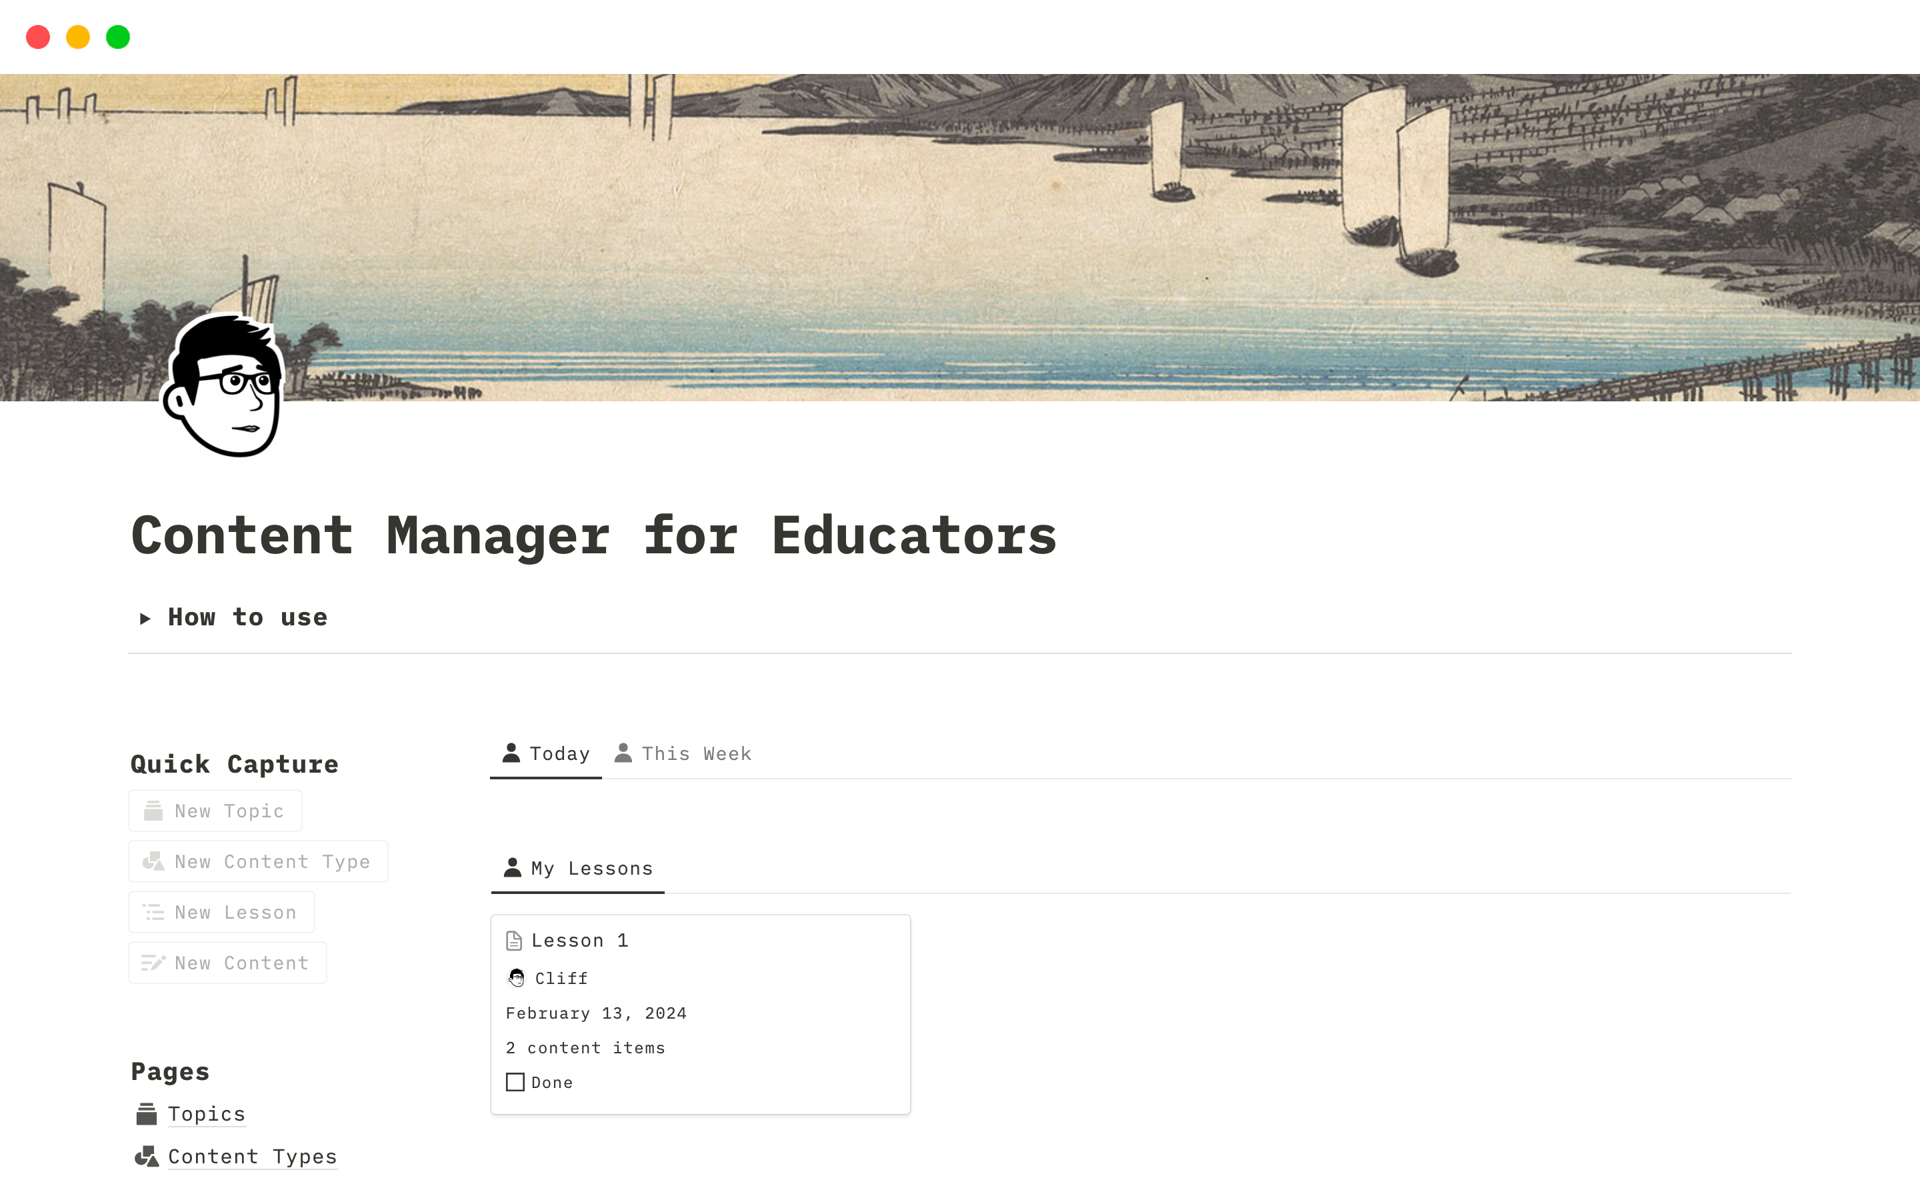 Vista previa de una plantilla para Content Manager for Educators